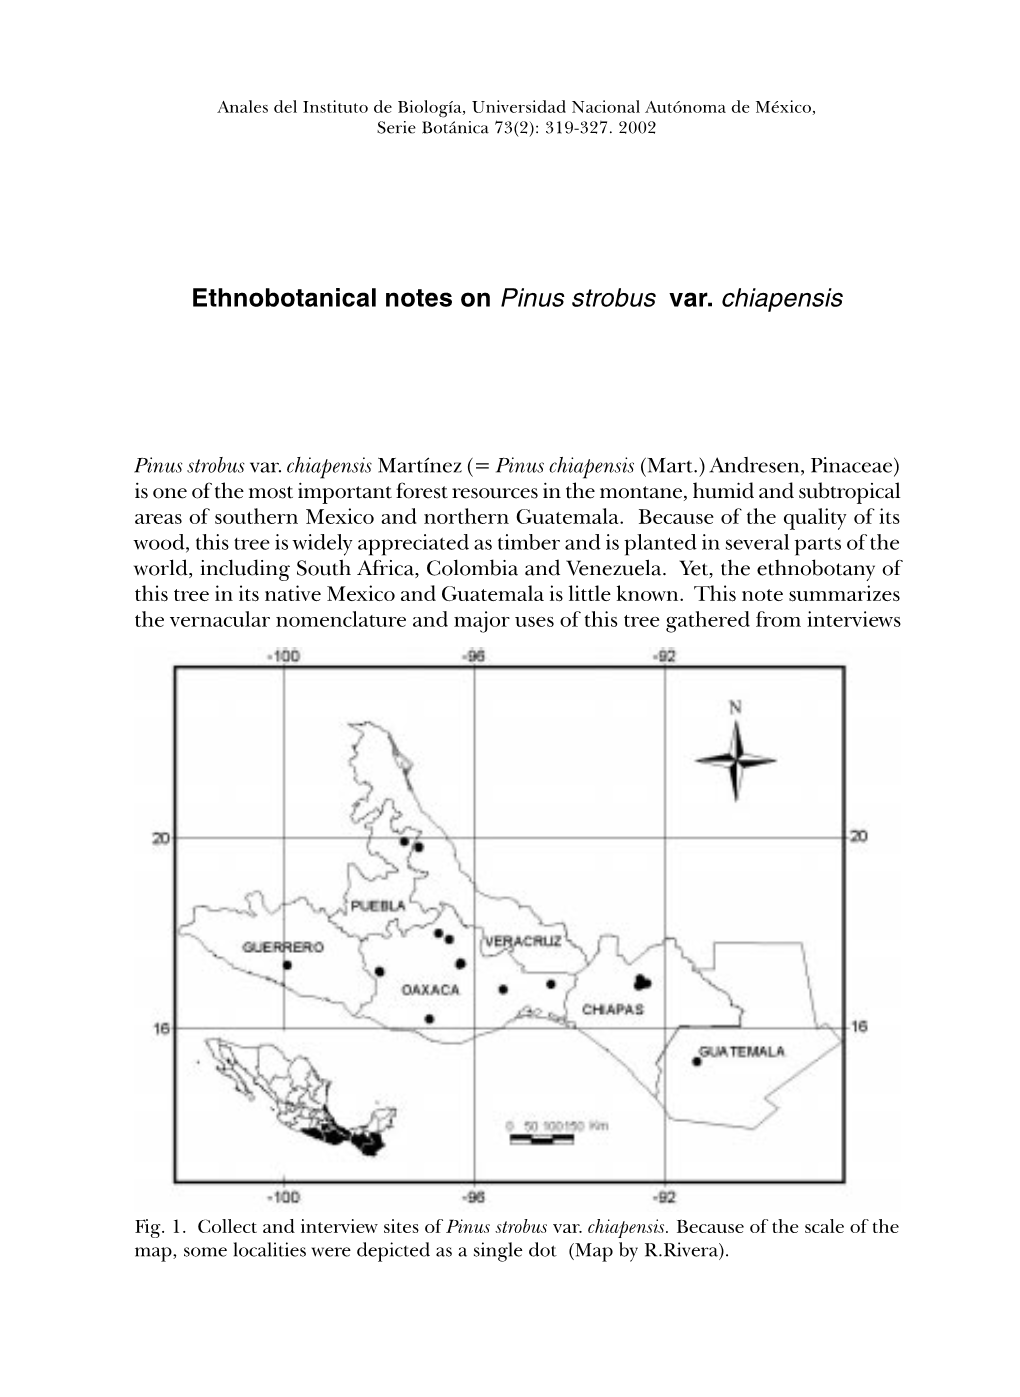 Ethnobotanical Notes on Pinus Strobus Var. Chiapensis